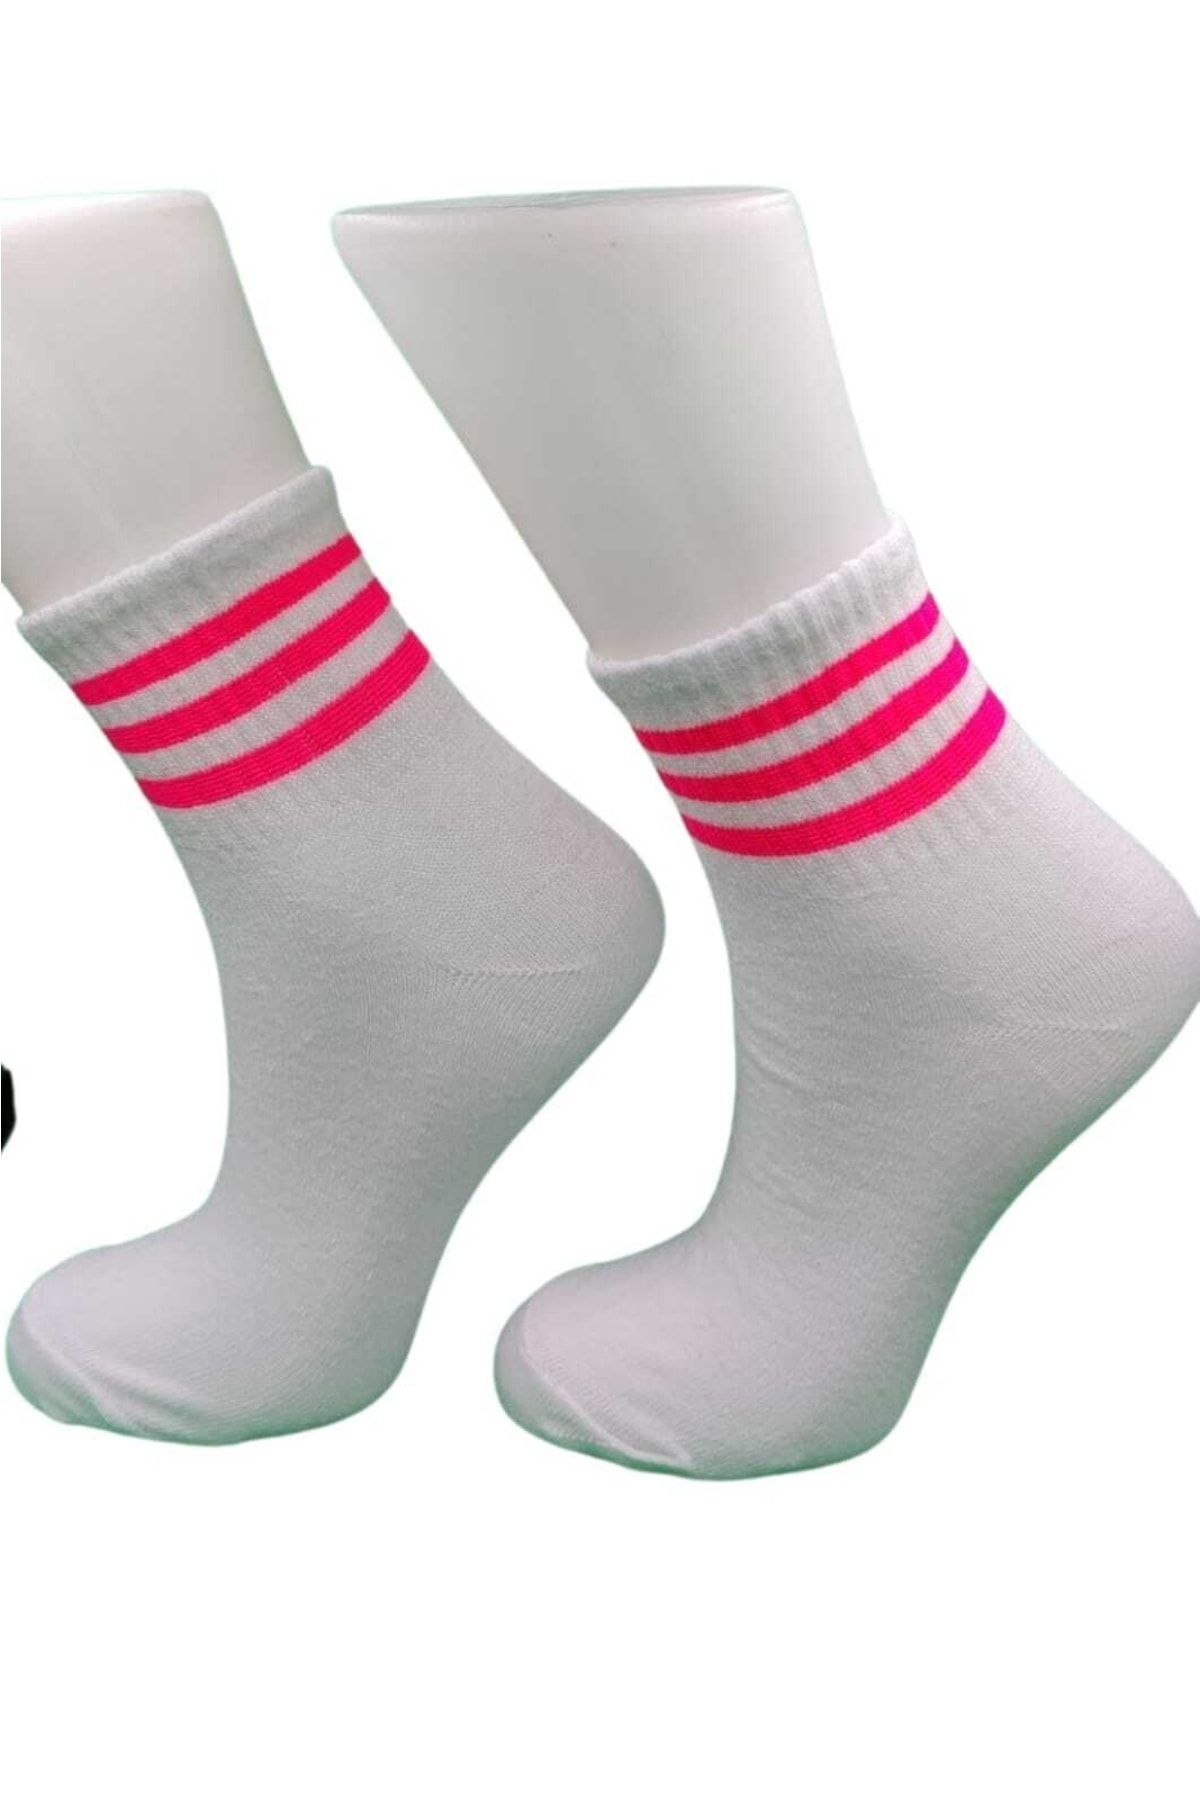 pazariz Beyaz Patik Çorap Çizgili 6 Adet